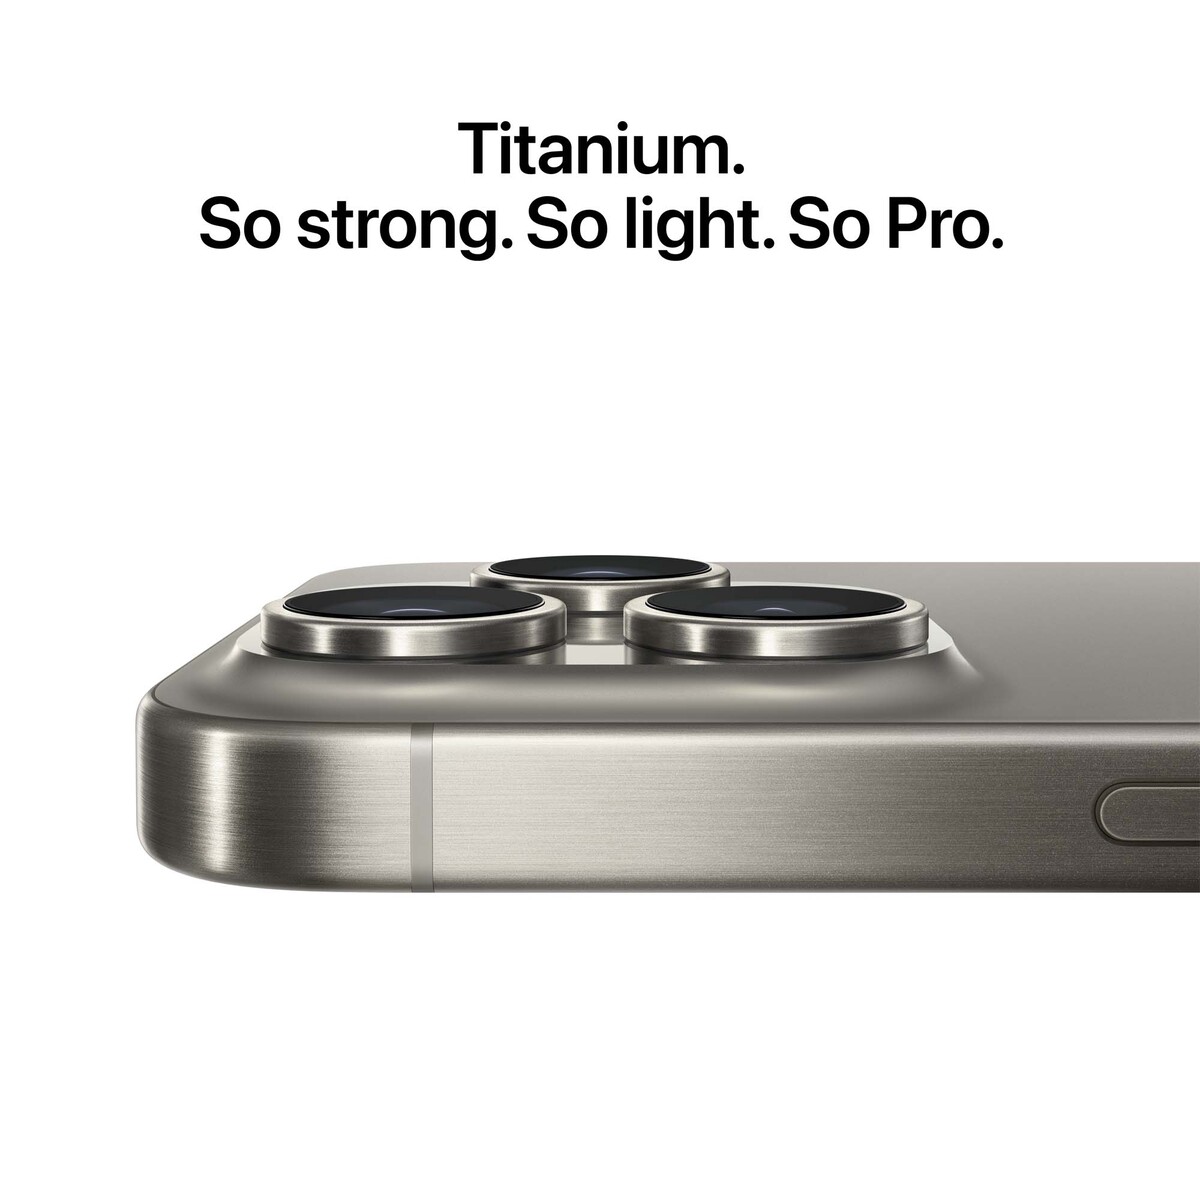 Apple iPhone15 Pro Max, 256 GB Storage, Blue Titanium